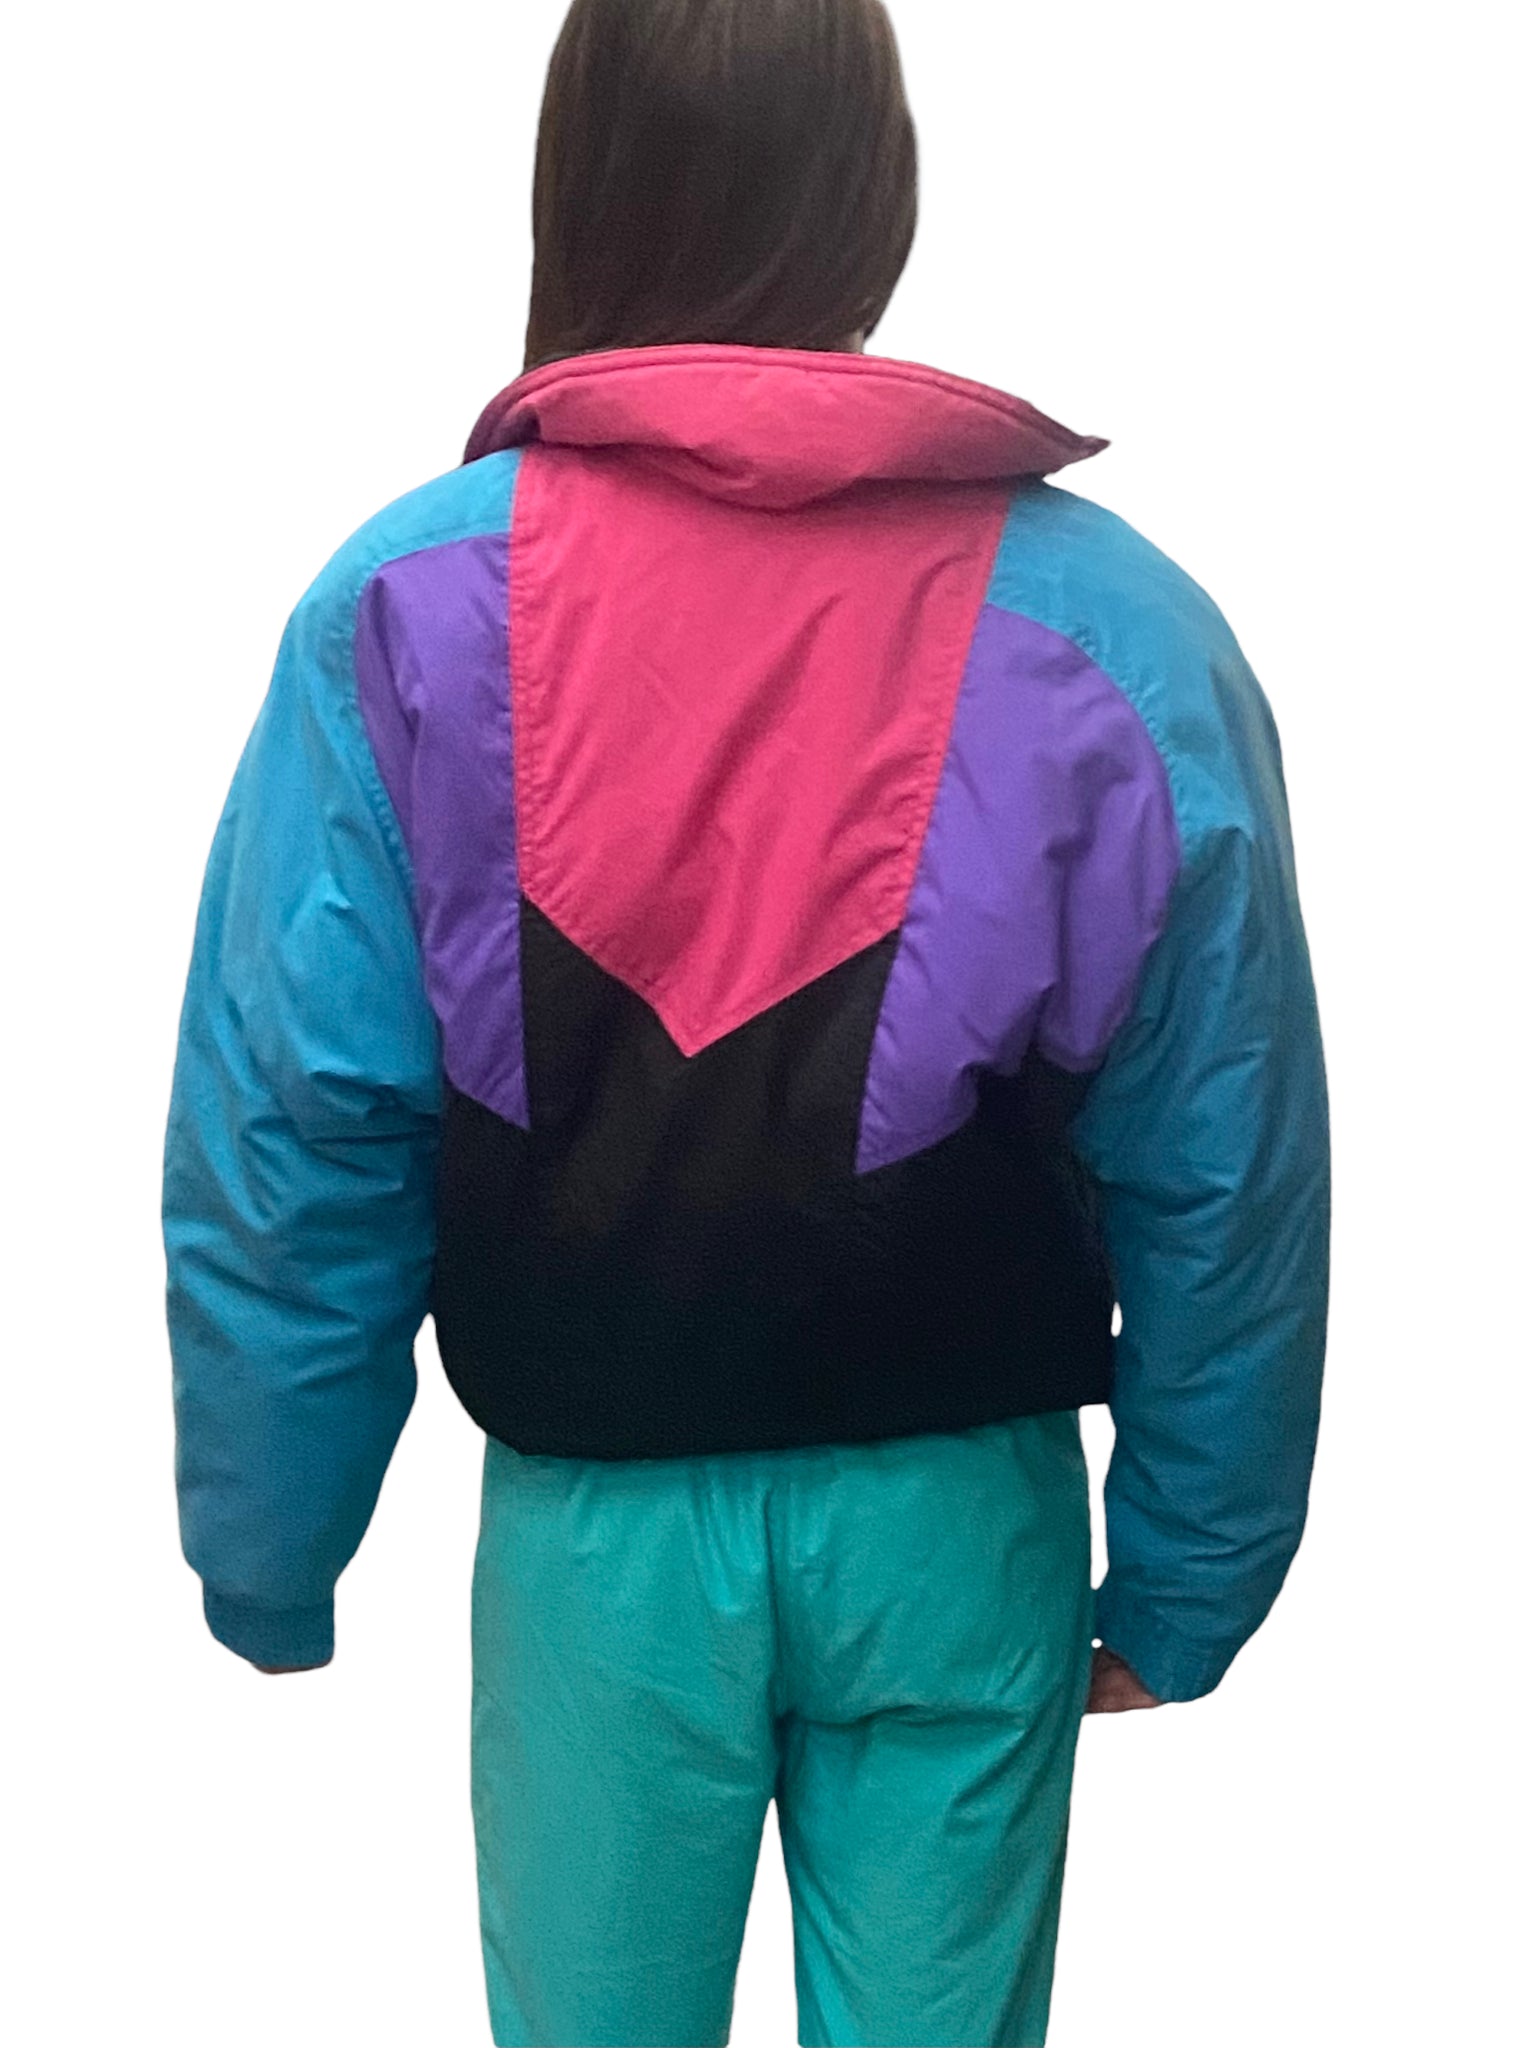 VTG Retro 80s 90s Neon Jacket Size Medium- Head Sportswear Worldwide